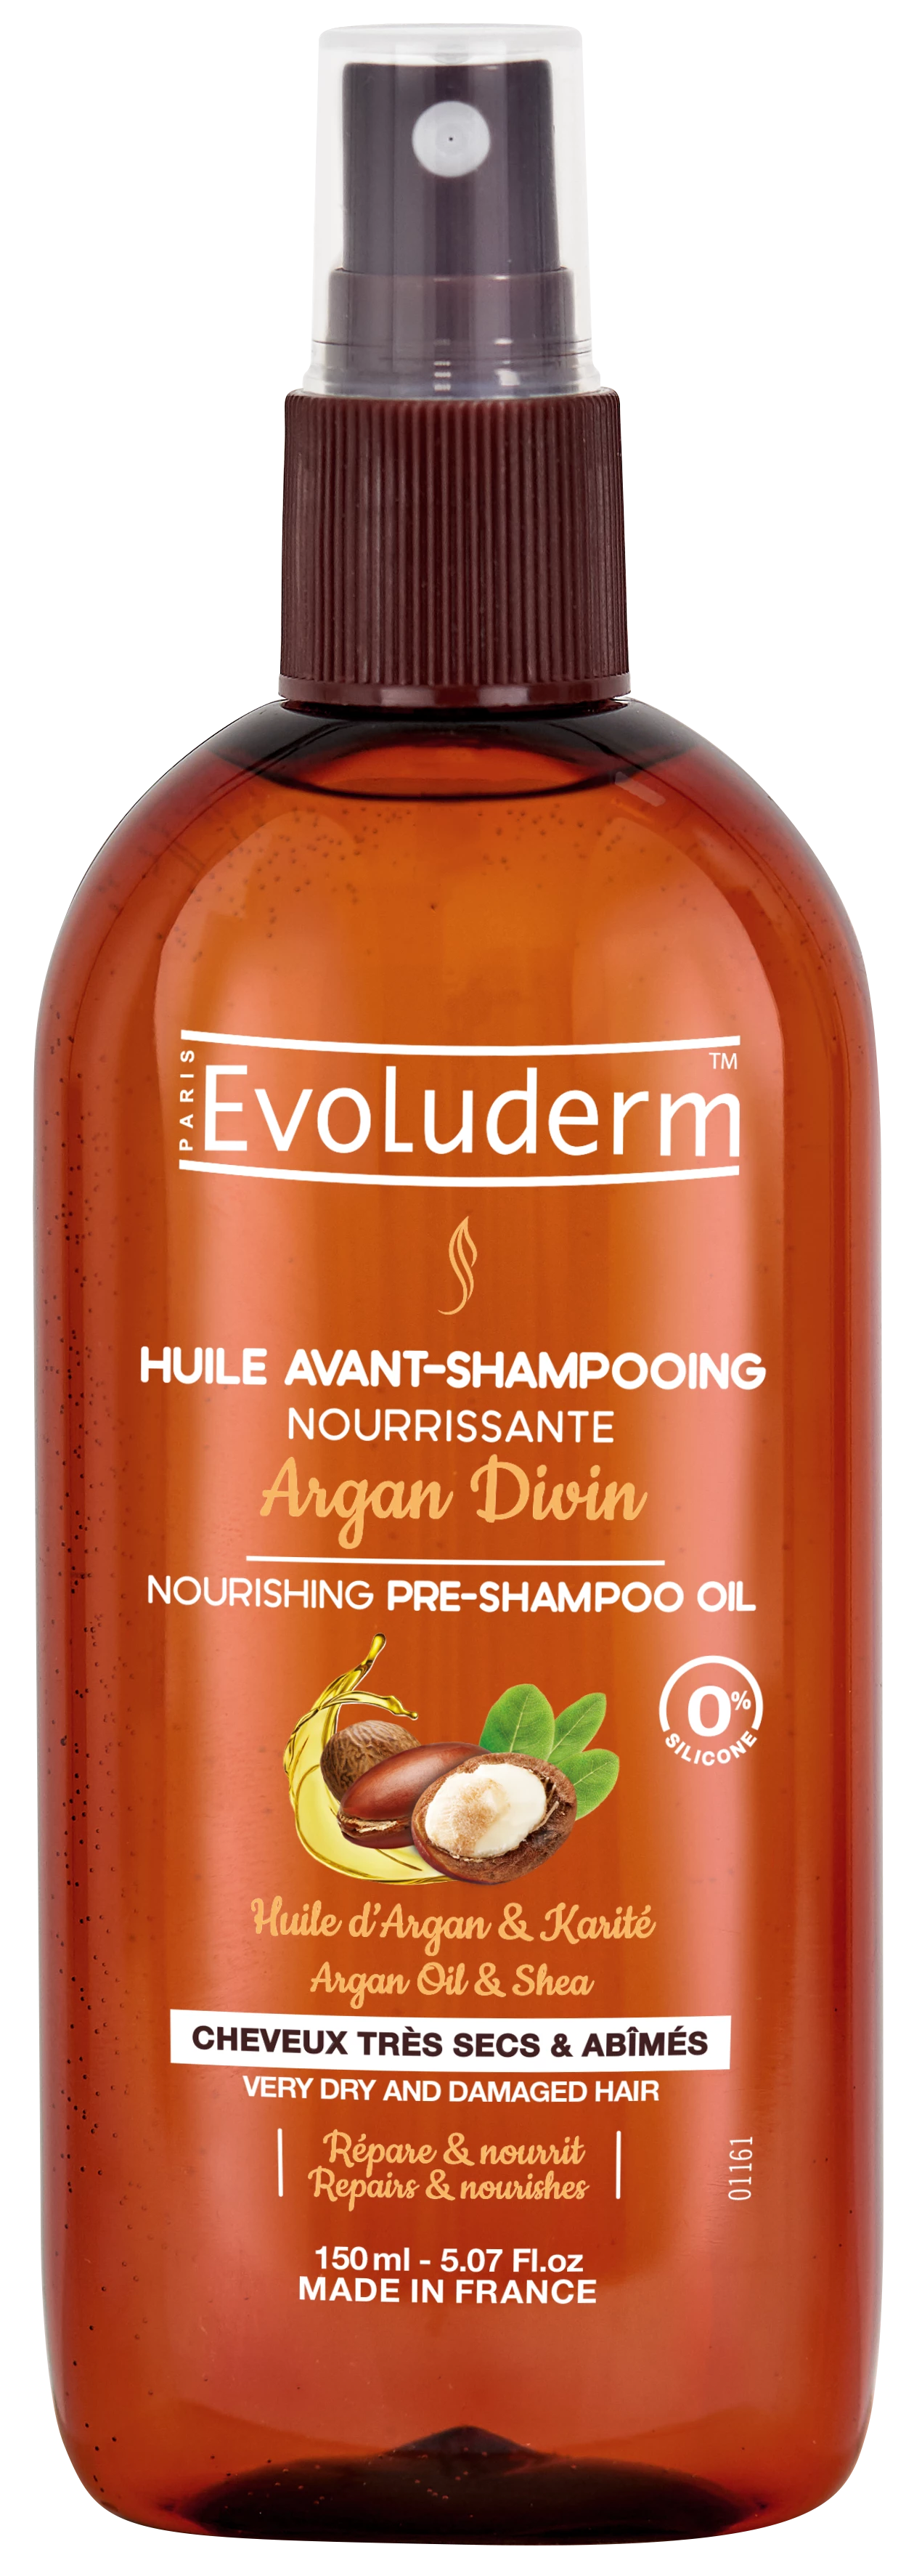 Huile Avant-shampoing Nourrissante Argan Divin 150ml - Evoluderm